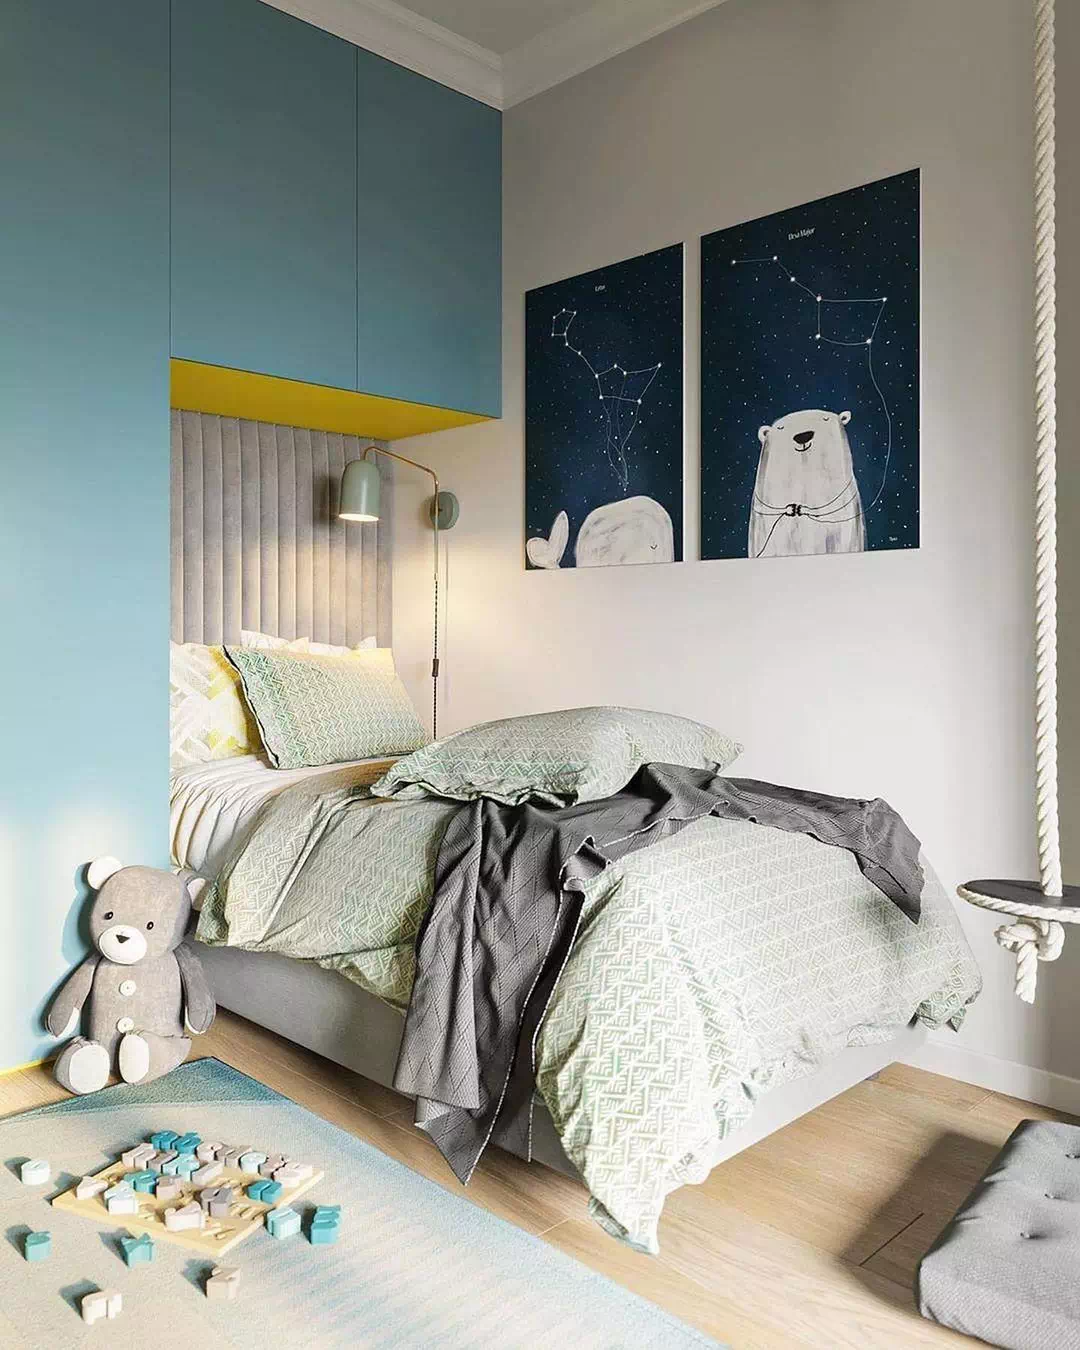 Дизайн детской спальни для мальчика в бело-синем цвете 1